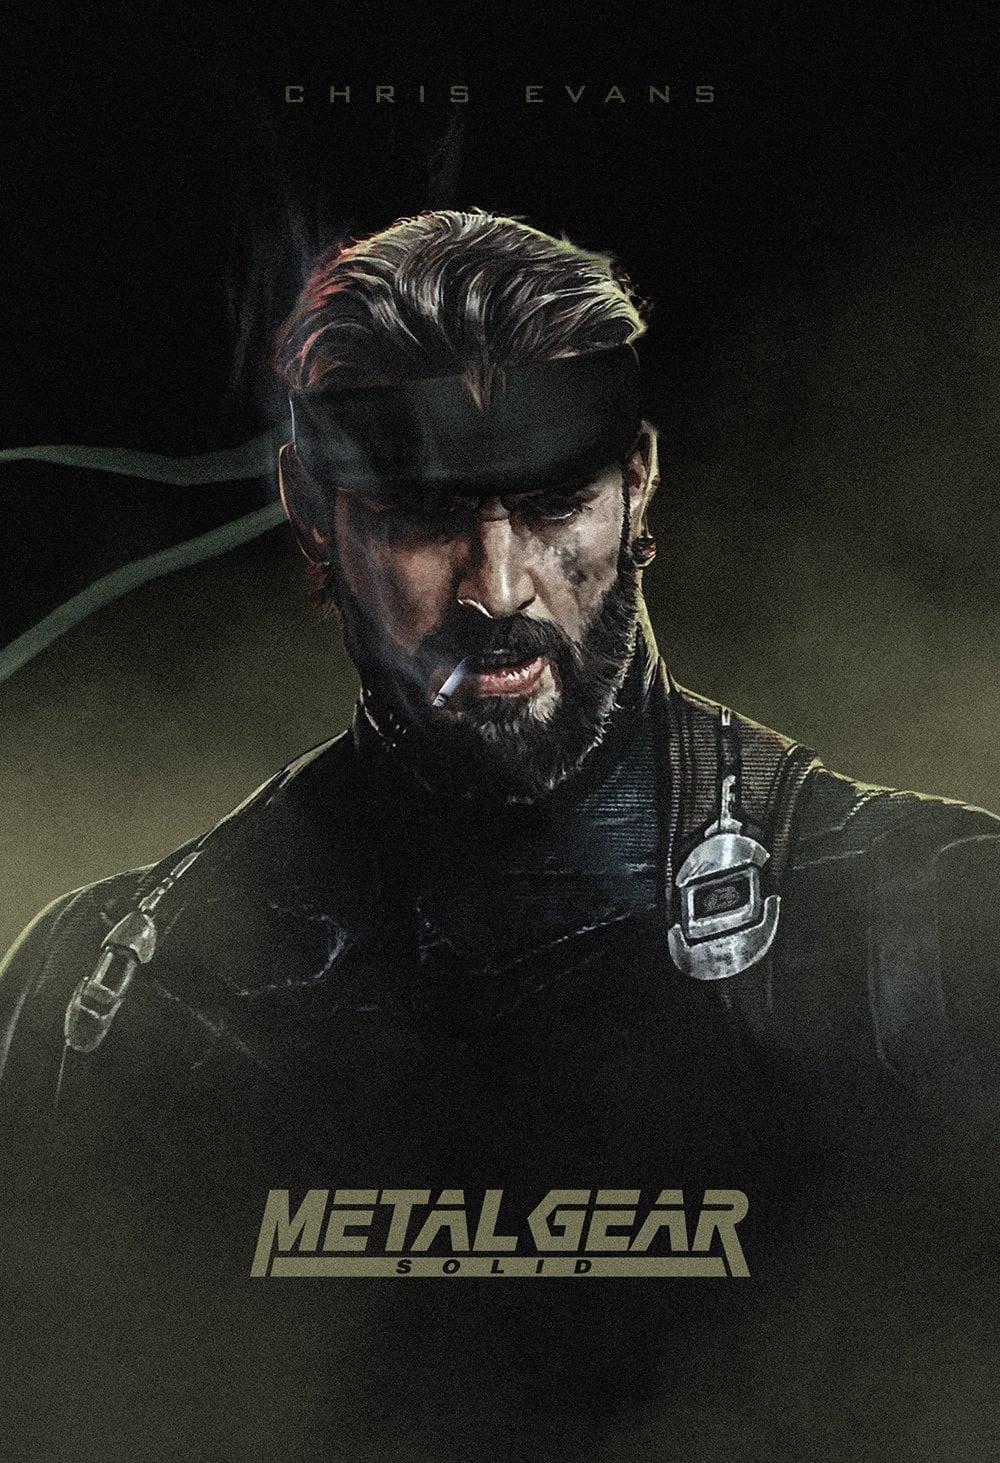 Metal Gear, video games, Chris Evans, Metal Gear Solid V